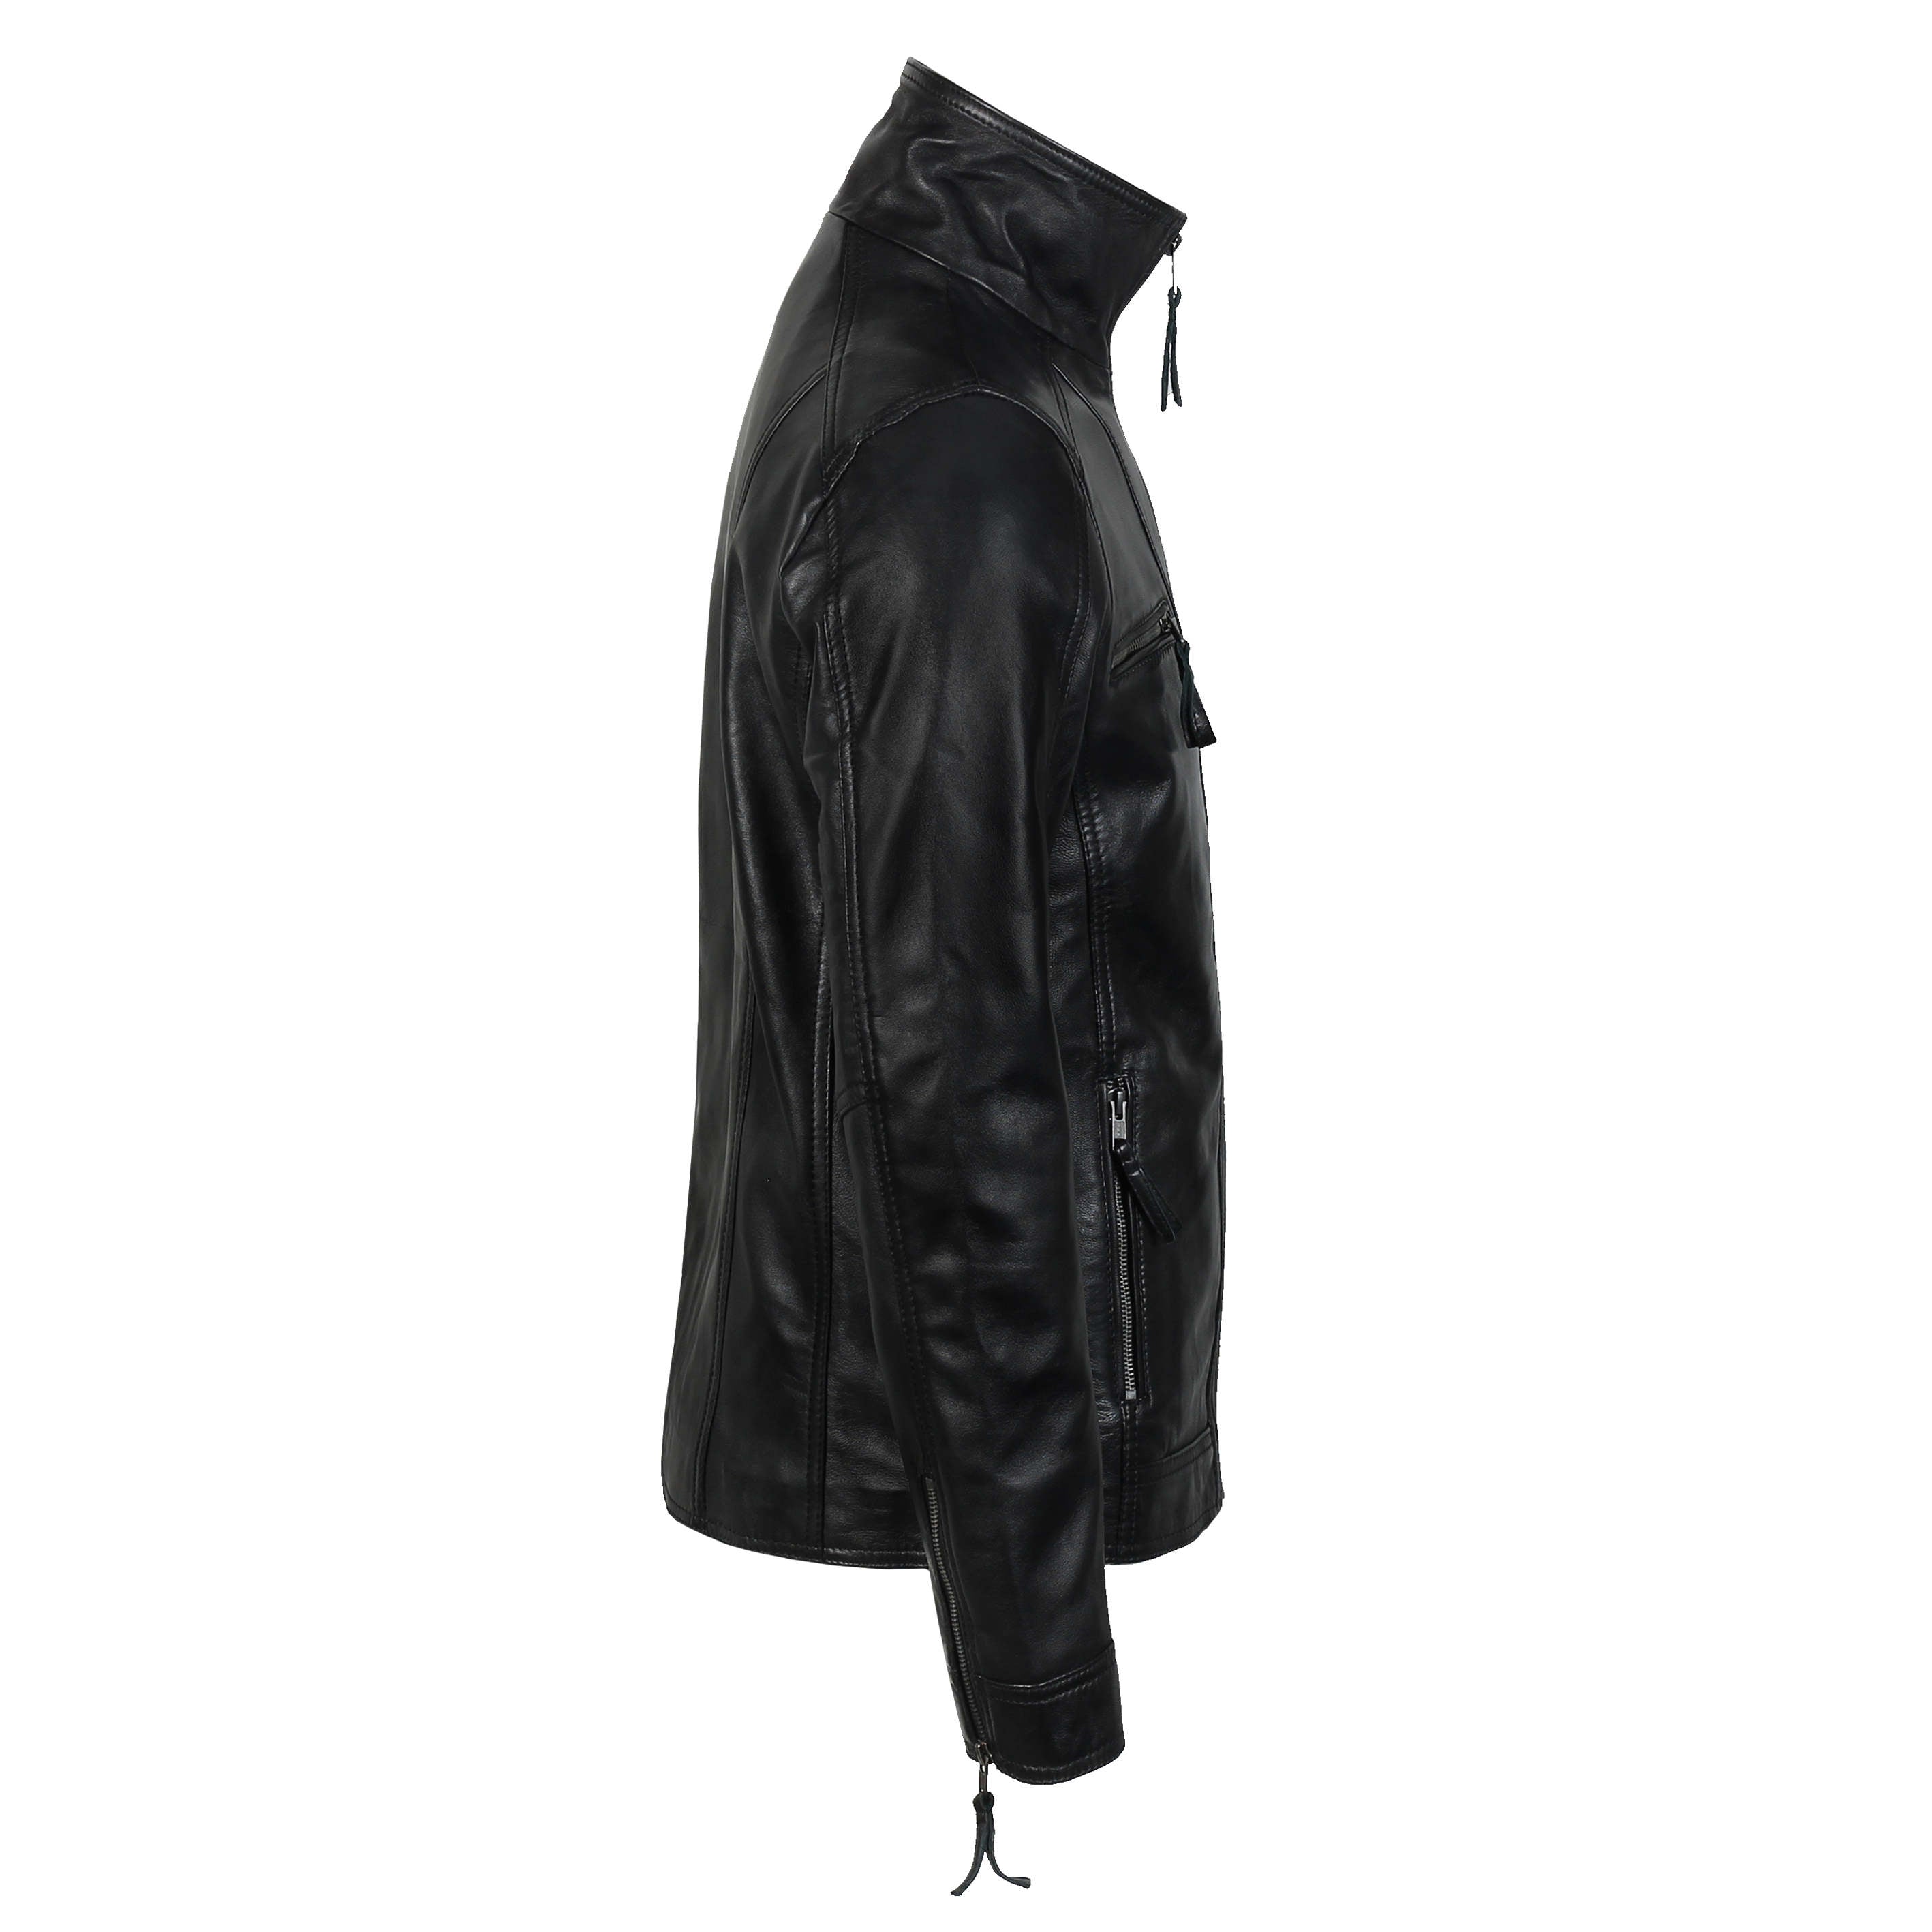 Mens Real Leather Jacket Vintage Style Black Soft Biker Slim Fit Smart Casual